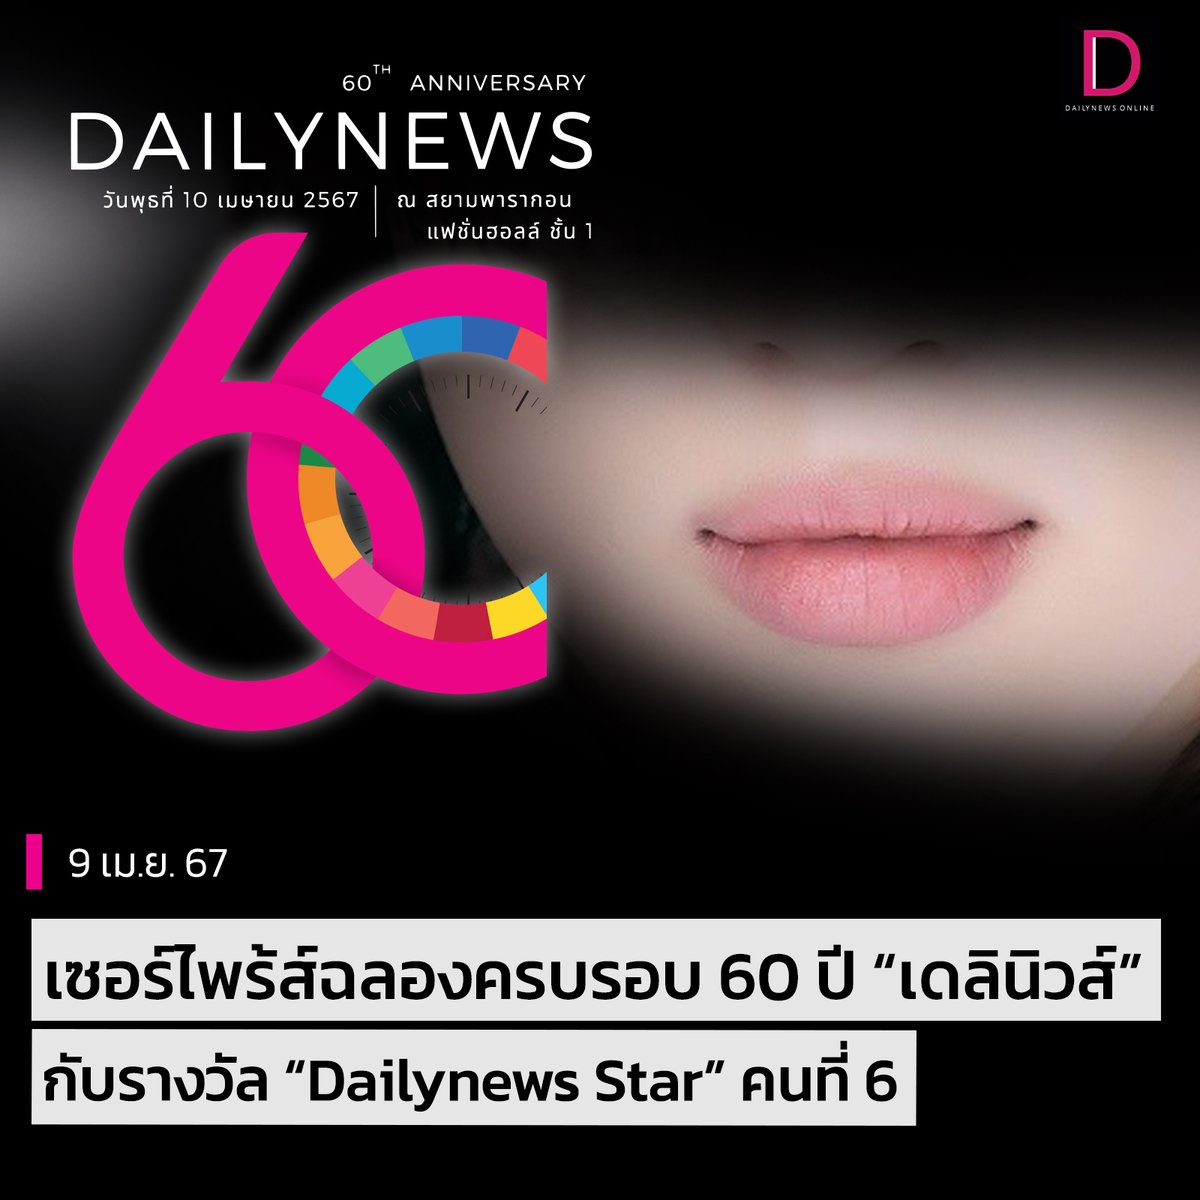 #SeoulStation : เซอร์ไพร้ส์ฉลองครบรอบ 60 ปี “เดลินิวส์” กับรางวัลอันทรงเกียรติ “Dailynews Star” คนที่ 6!! 🔥 . จะเป็นใครไปไม่ได้ นั่นก็คือศิลปินสุดฮอตระดับโลกชื่อดังขวัญใจแฟนๆชาวไทย ที่กุมหัวใจชาวเดลินิวส์อยู่หมัด!! 💖 . 'นูน่าเมี้ยน' มีภาพมาให้แฟนๆ…